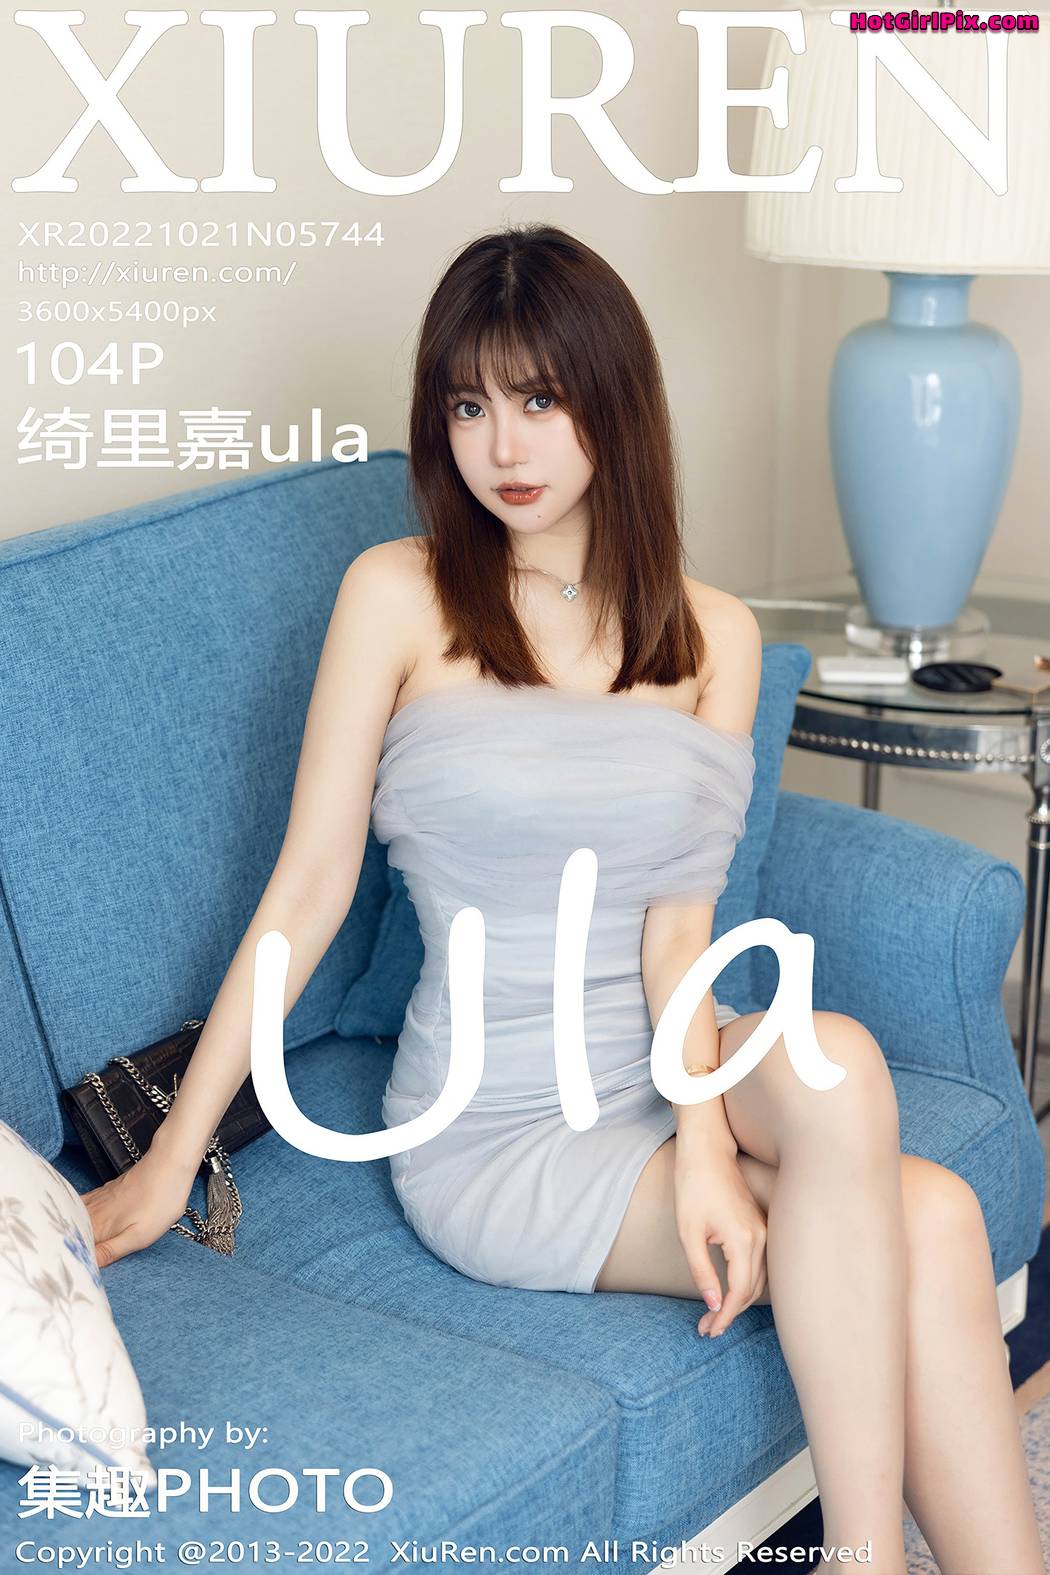 [XIUREN] No.5744 Qi Li Jia 绮里嘉ula Cover Photo